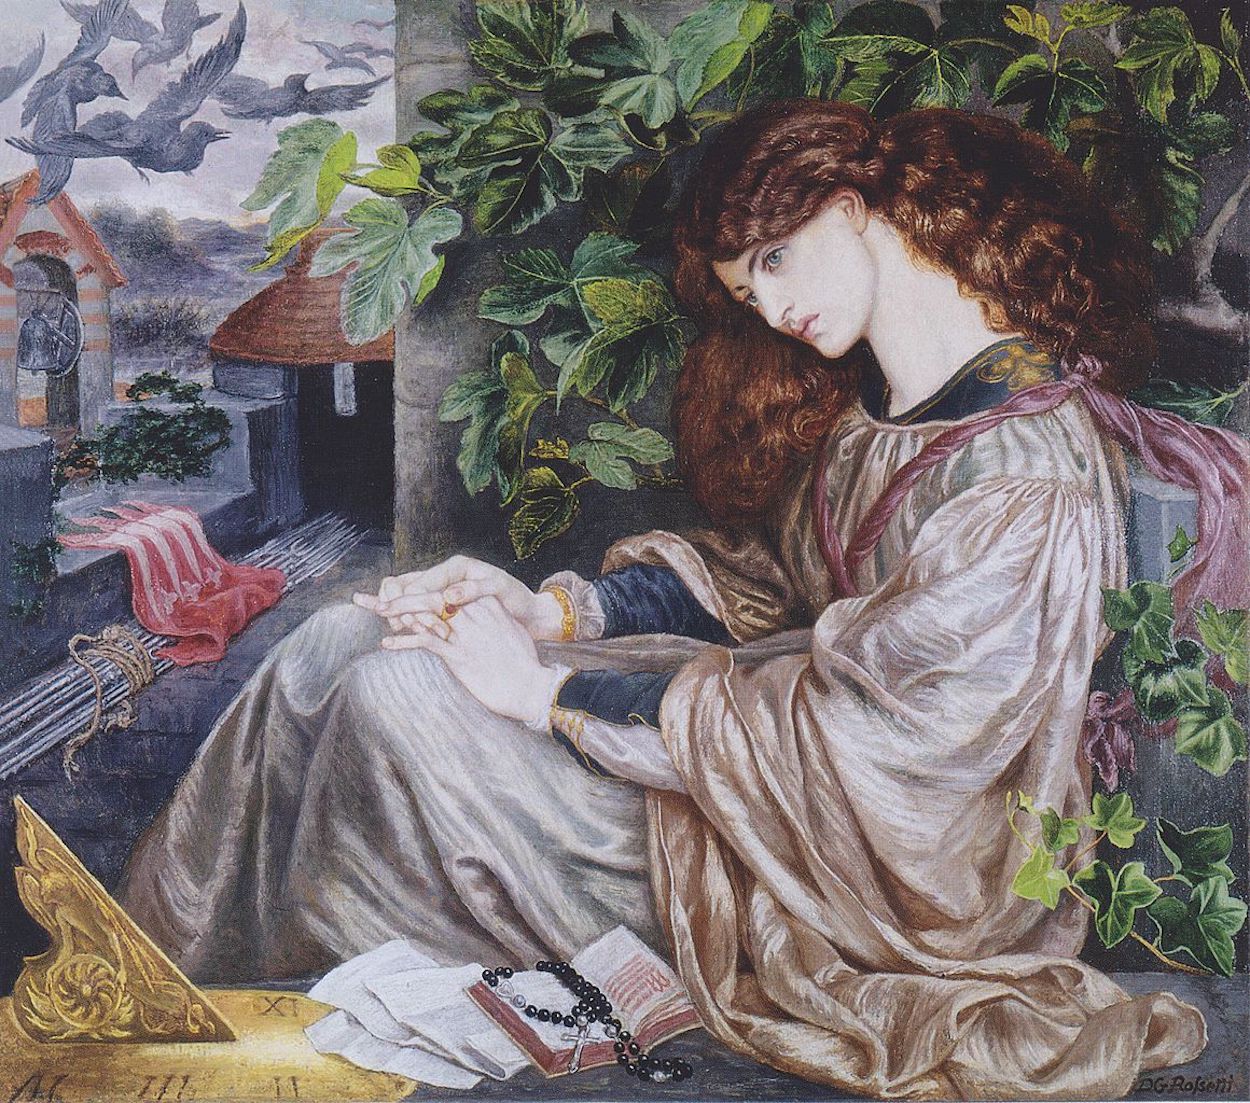 La Pia de' Tolomei by Dante Gabriel Rossetti - 1868–1880 - 104,8 x 120,6 cm 